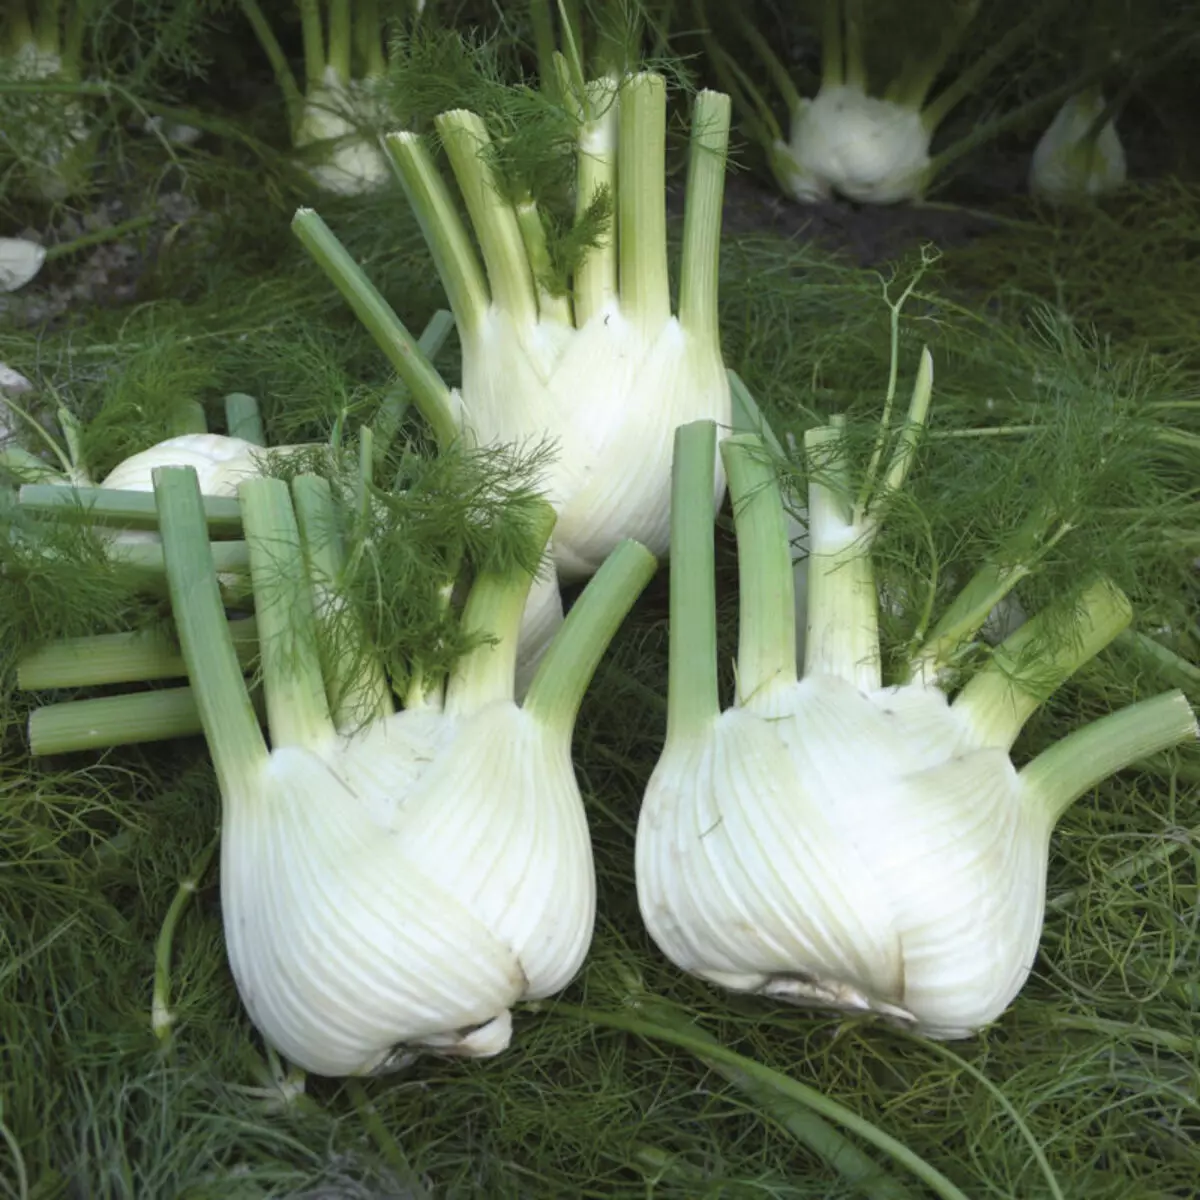 Parade keeb kwm. Celery, da dej thiab fennel - koj cov kev nyiam tshiab 19724_7